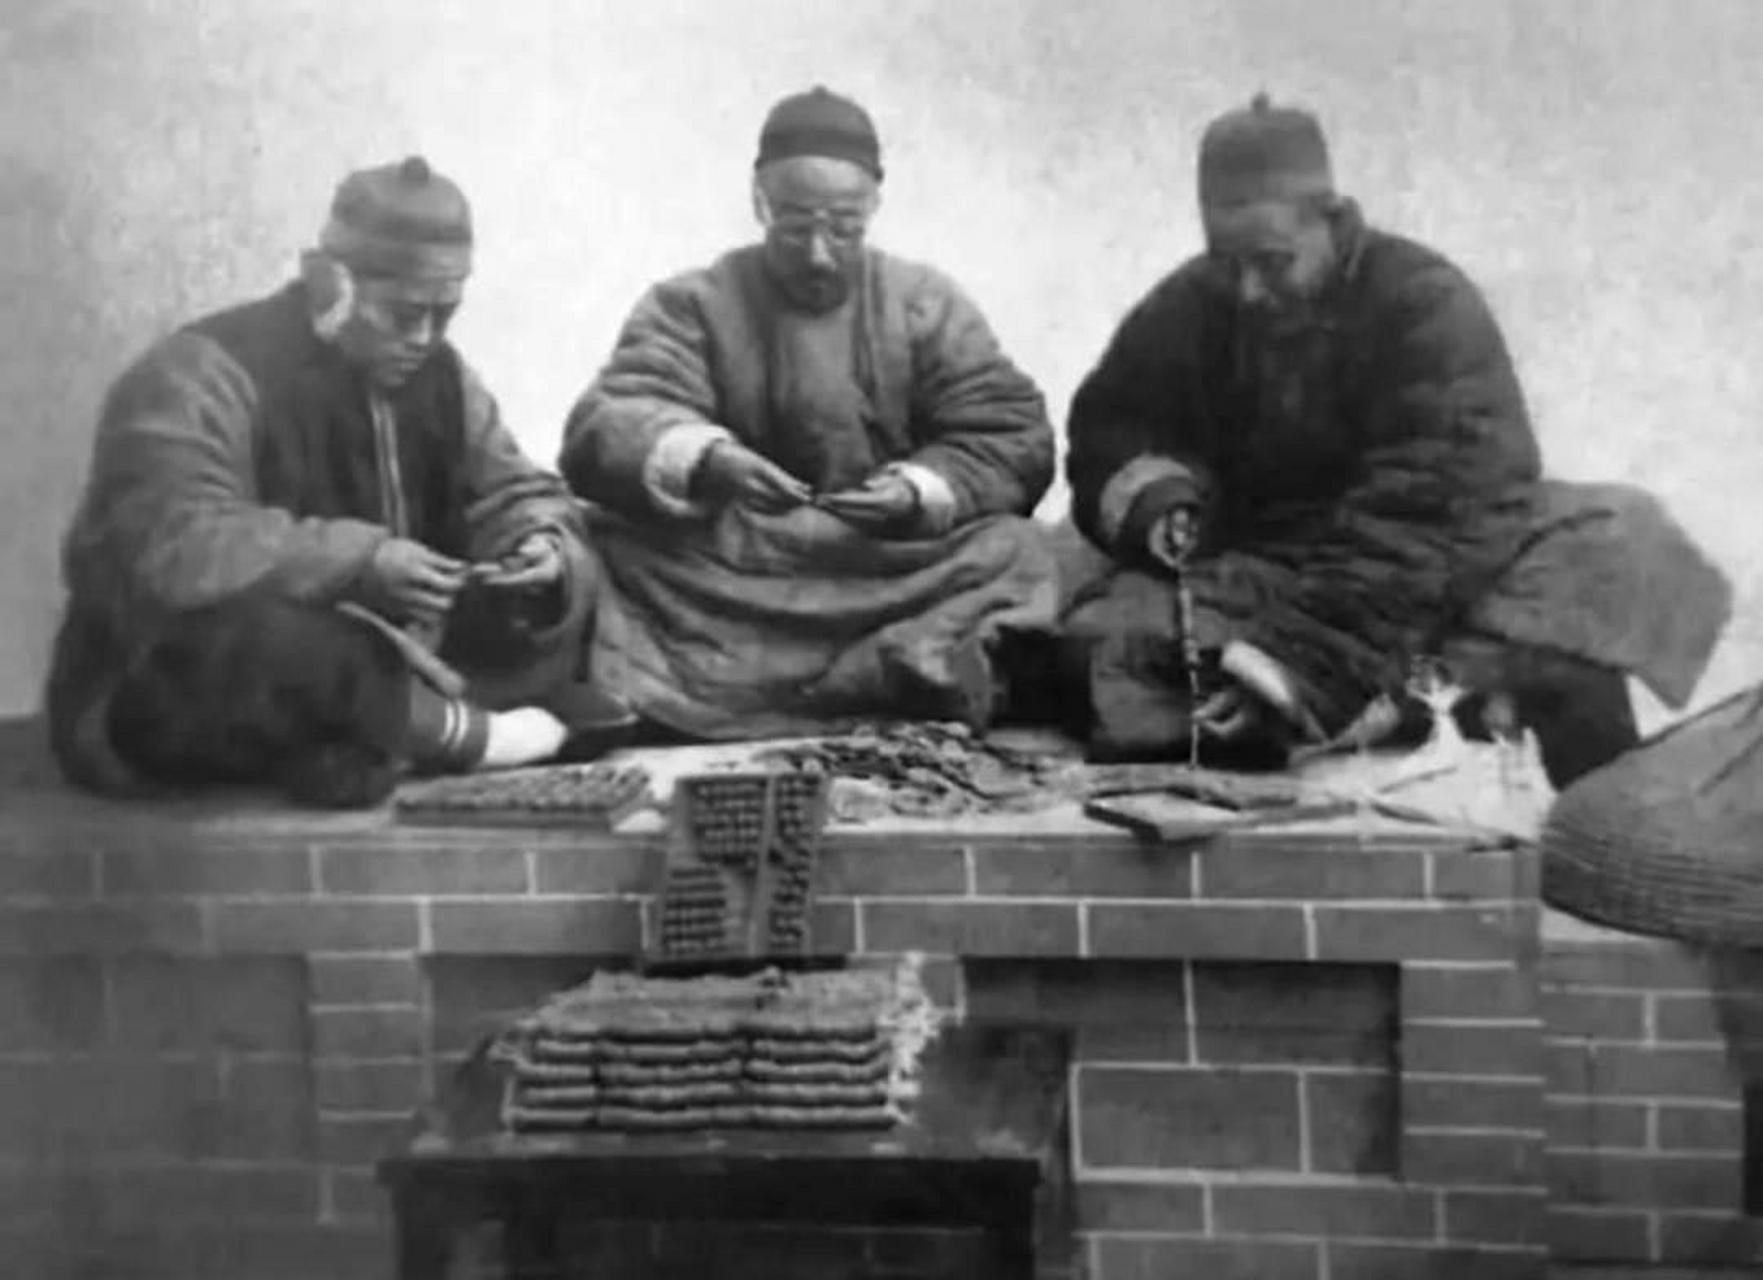 这张照片真实地展现了三位地主老财坐在炕上数钱的场景,他们手中的一